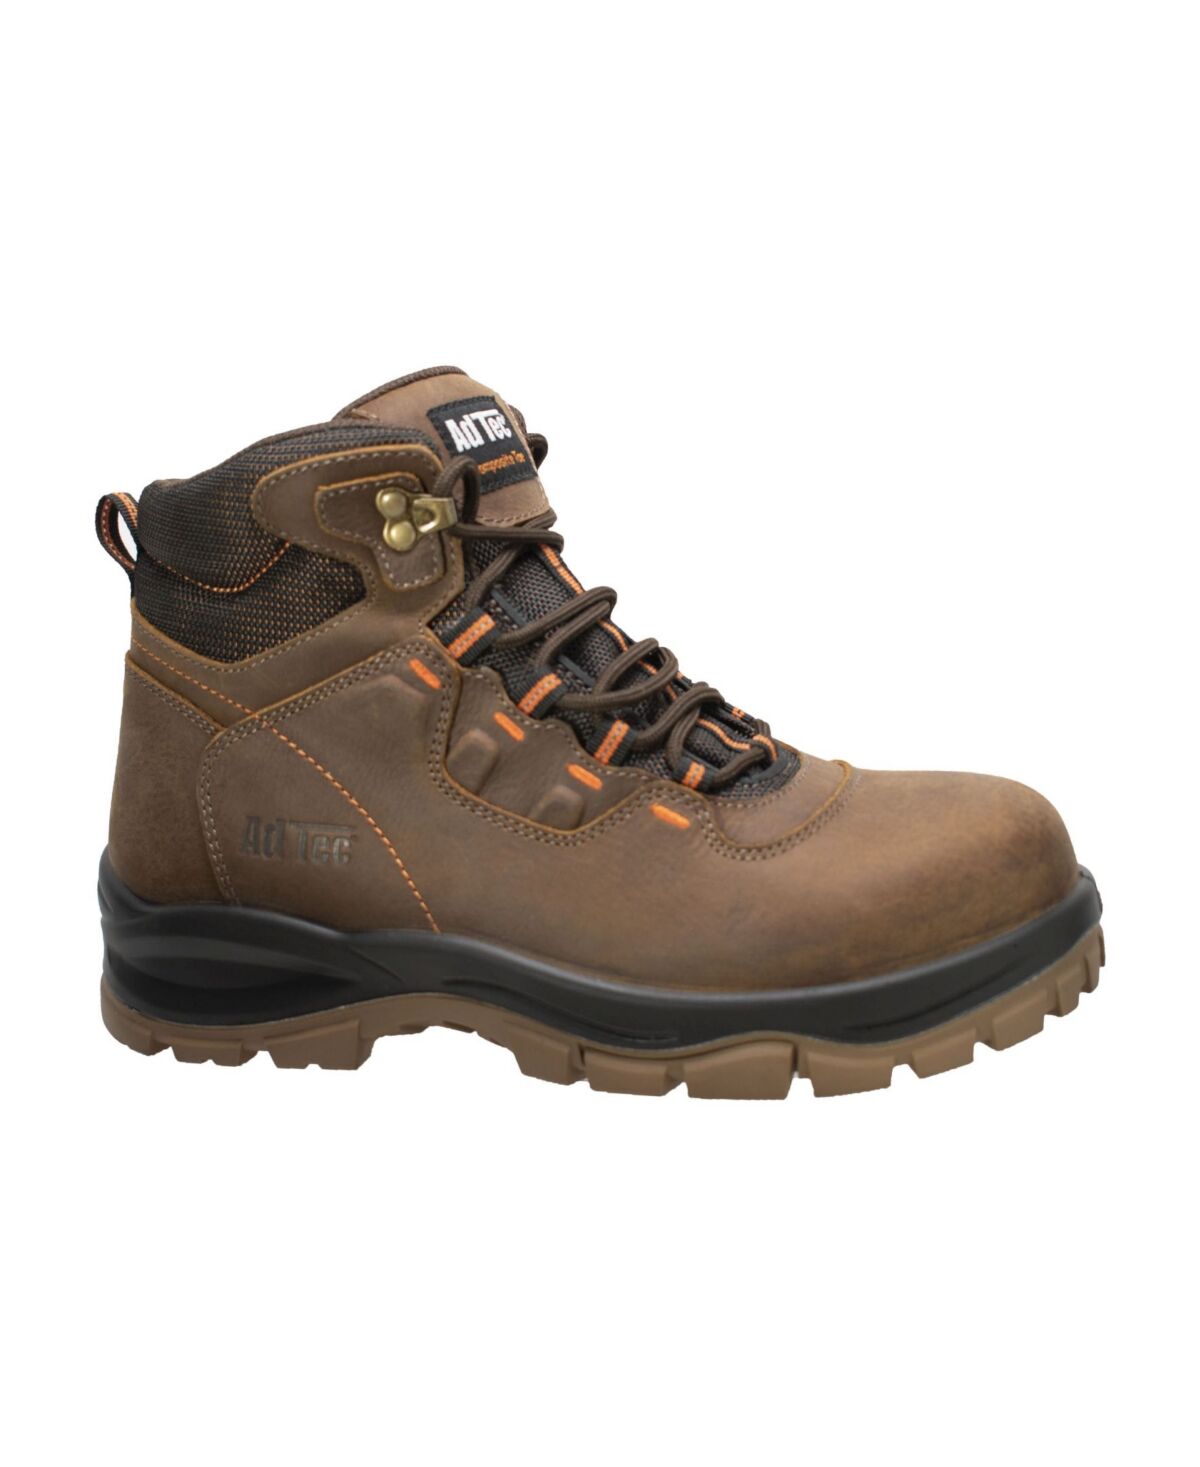 Adtec Men's Composite Toe Work Hiker Boot - Brown